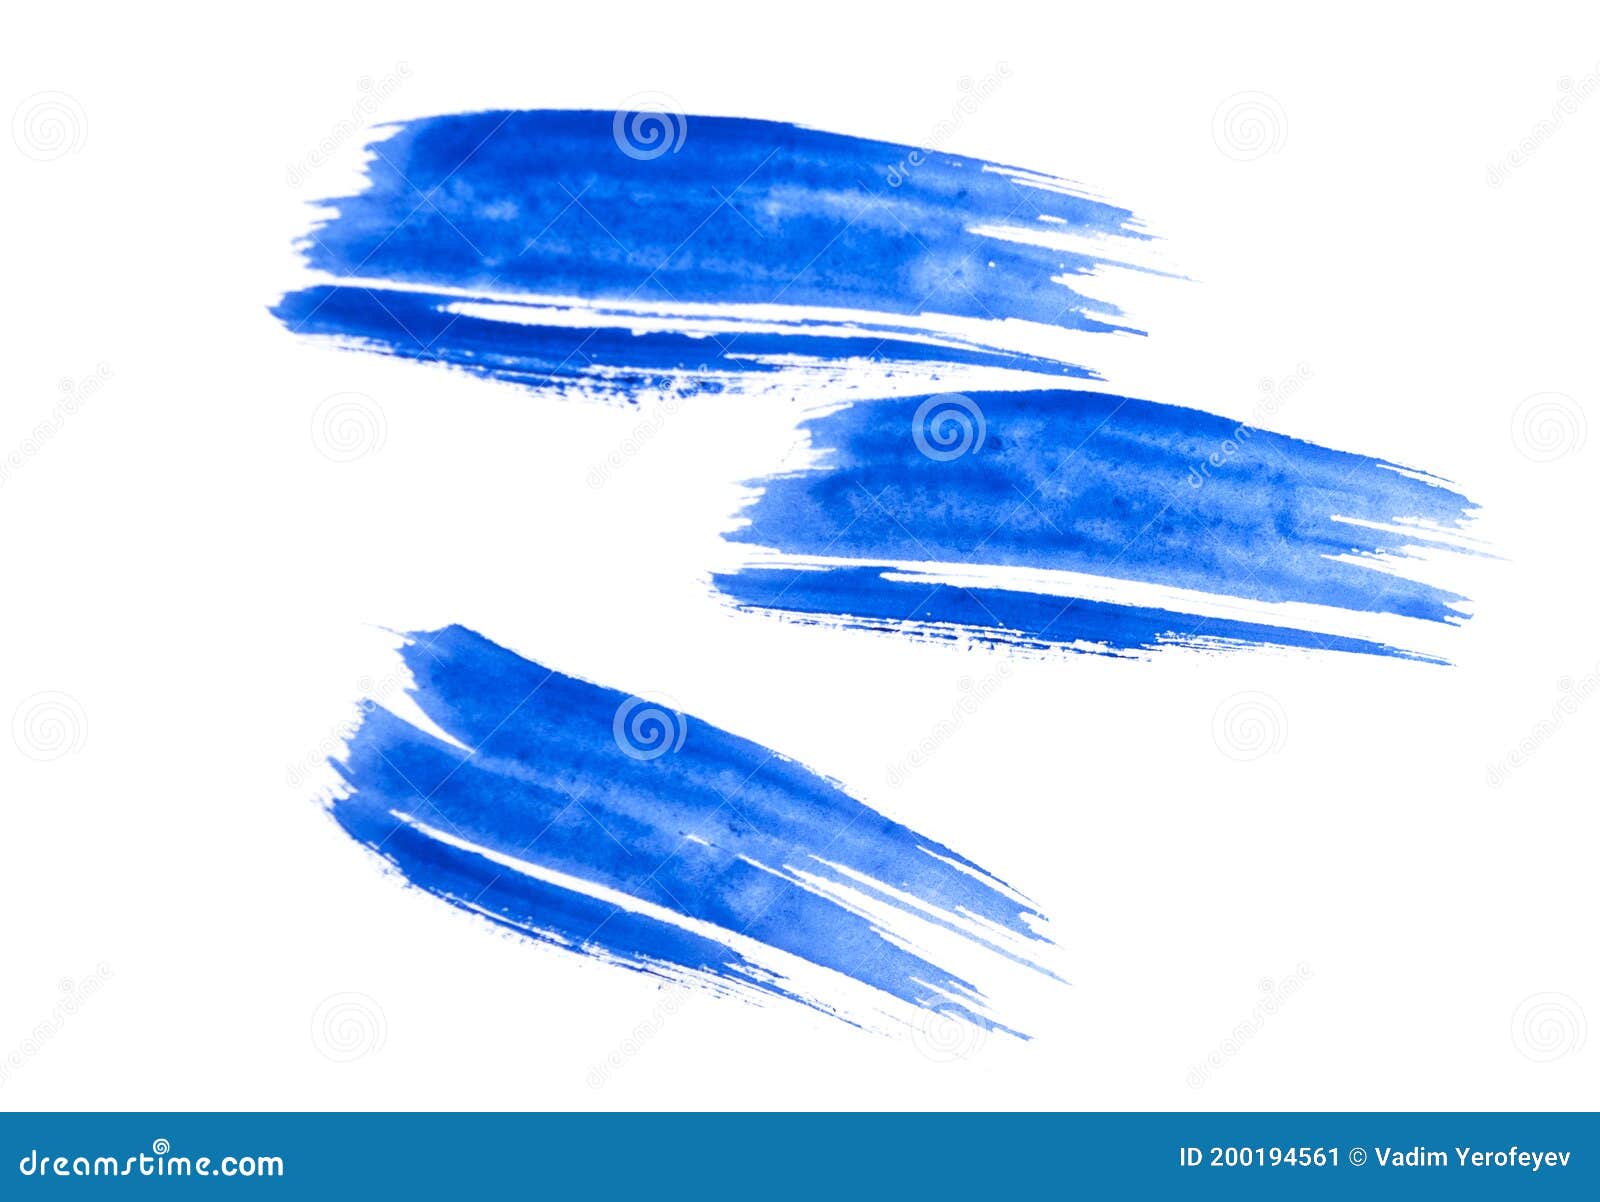 famélico ruido Regularmente Muchas De Las Formas De Pincel Pinceladas De Color Azul Aisladas En Fondo  Blanco Imagen de archivo - Imagen de copia, mancha: 200194561